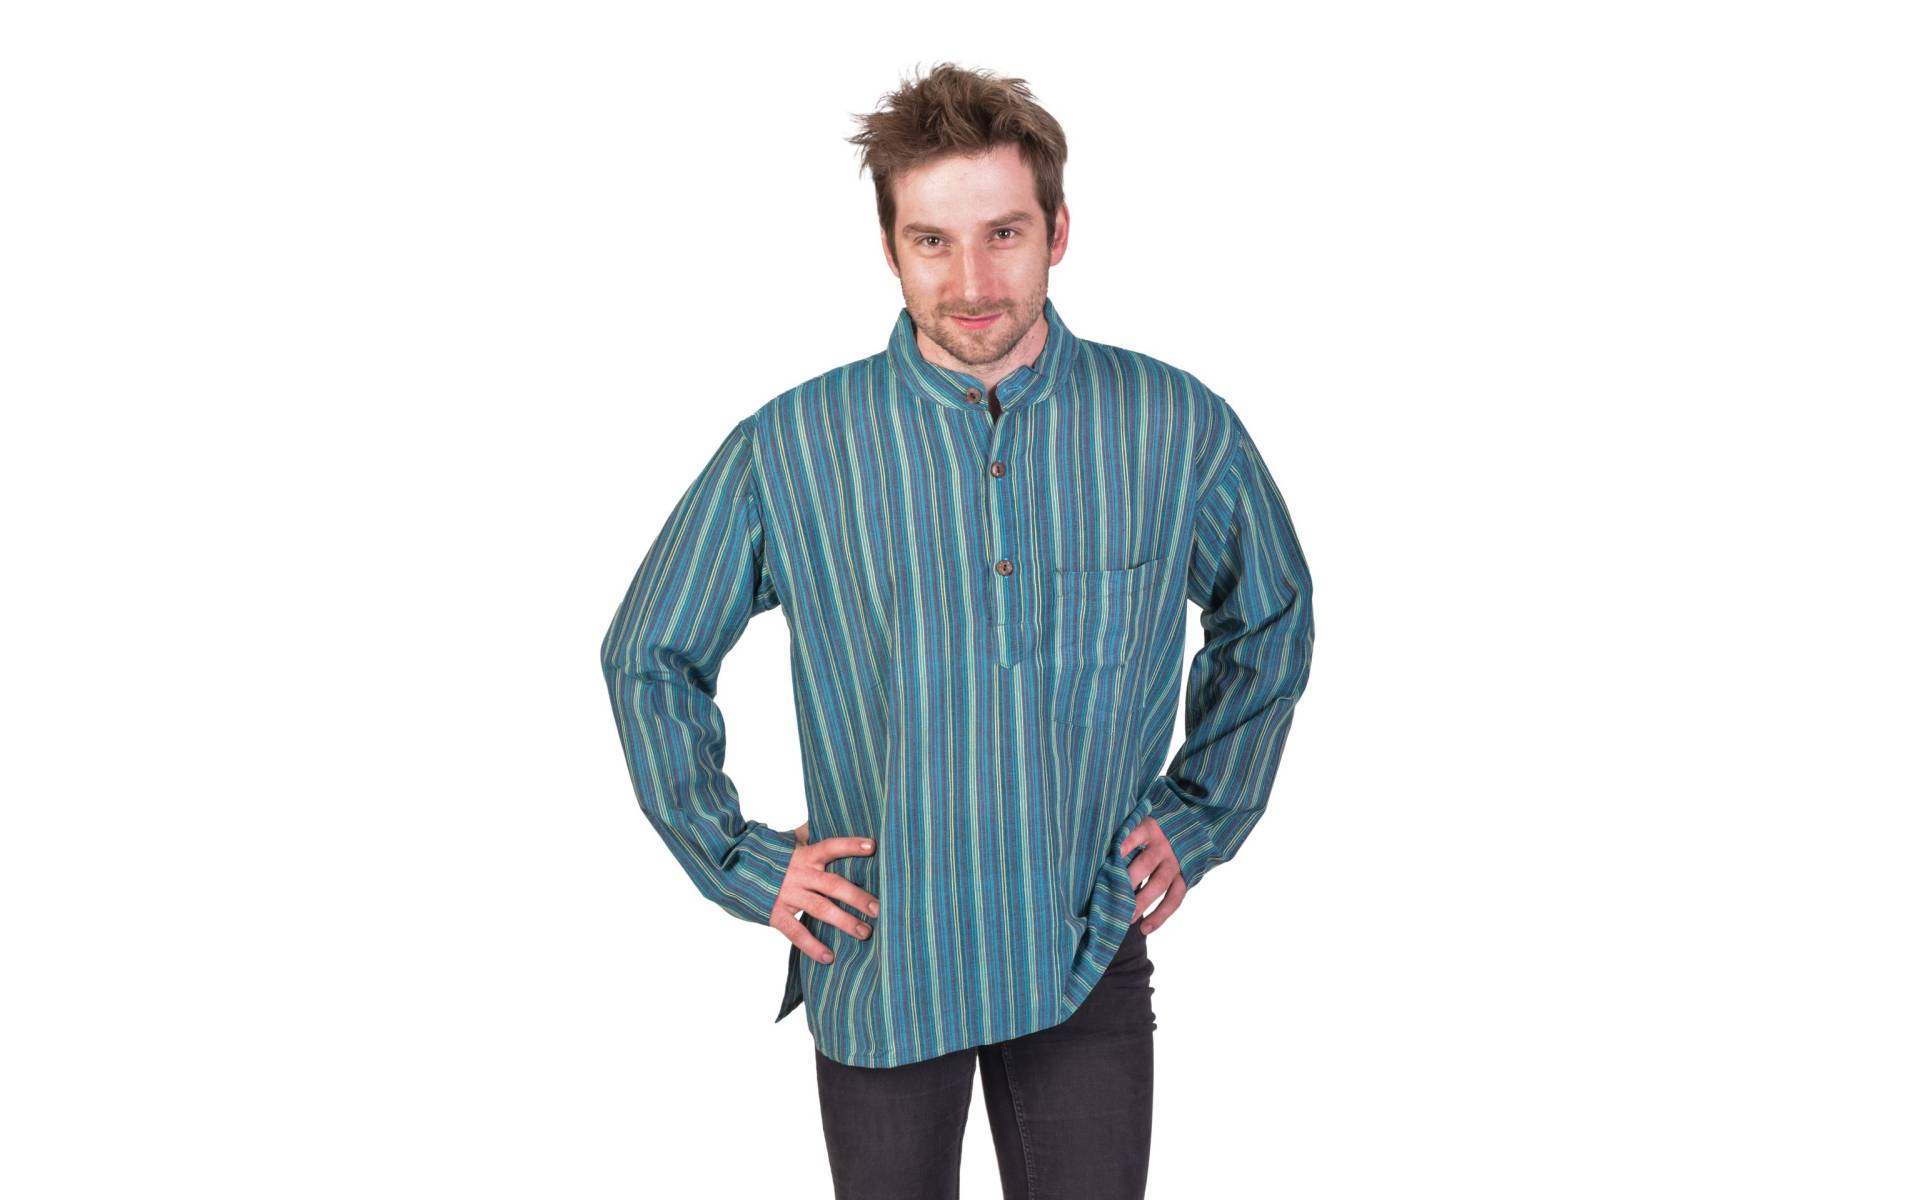 Pruhovaná pánska košeľa-kurta s dlhým rukávom a vreckom, modro-zelená